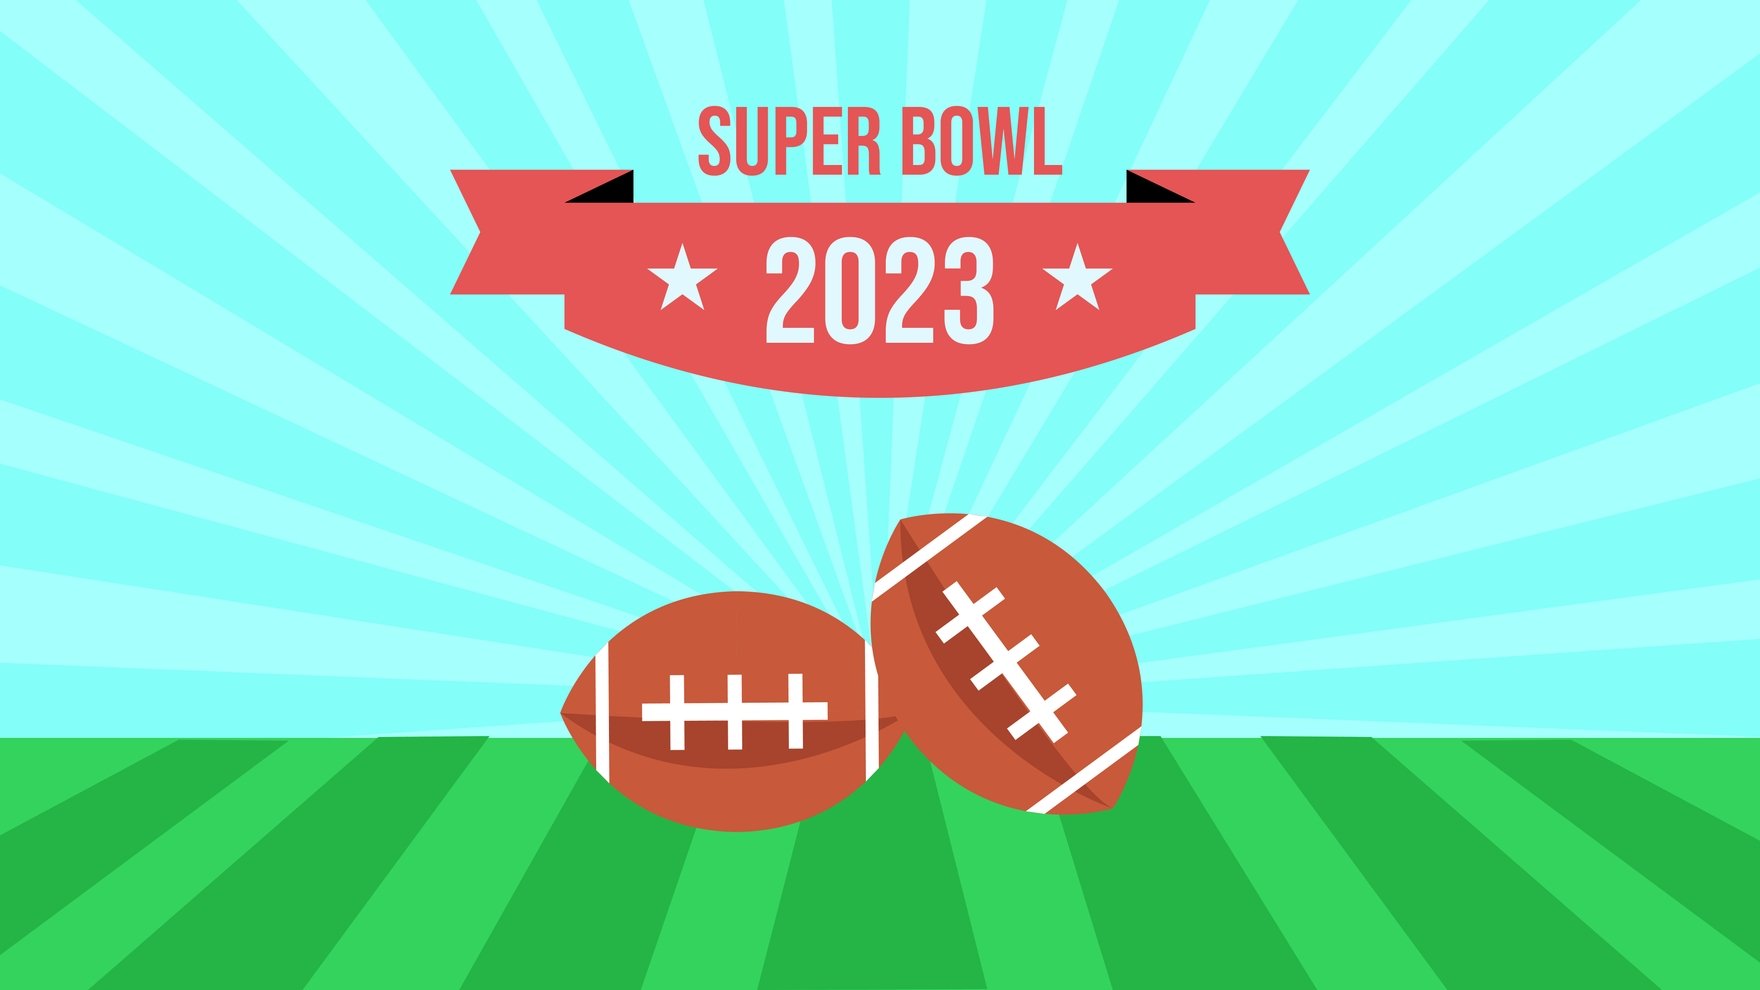 Free Super Bowl 2023 Vector Background in PDF, Illustrator, PSD, EPS, SVG, JPG, PNG